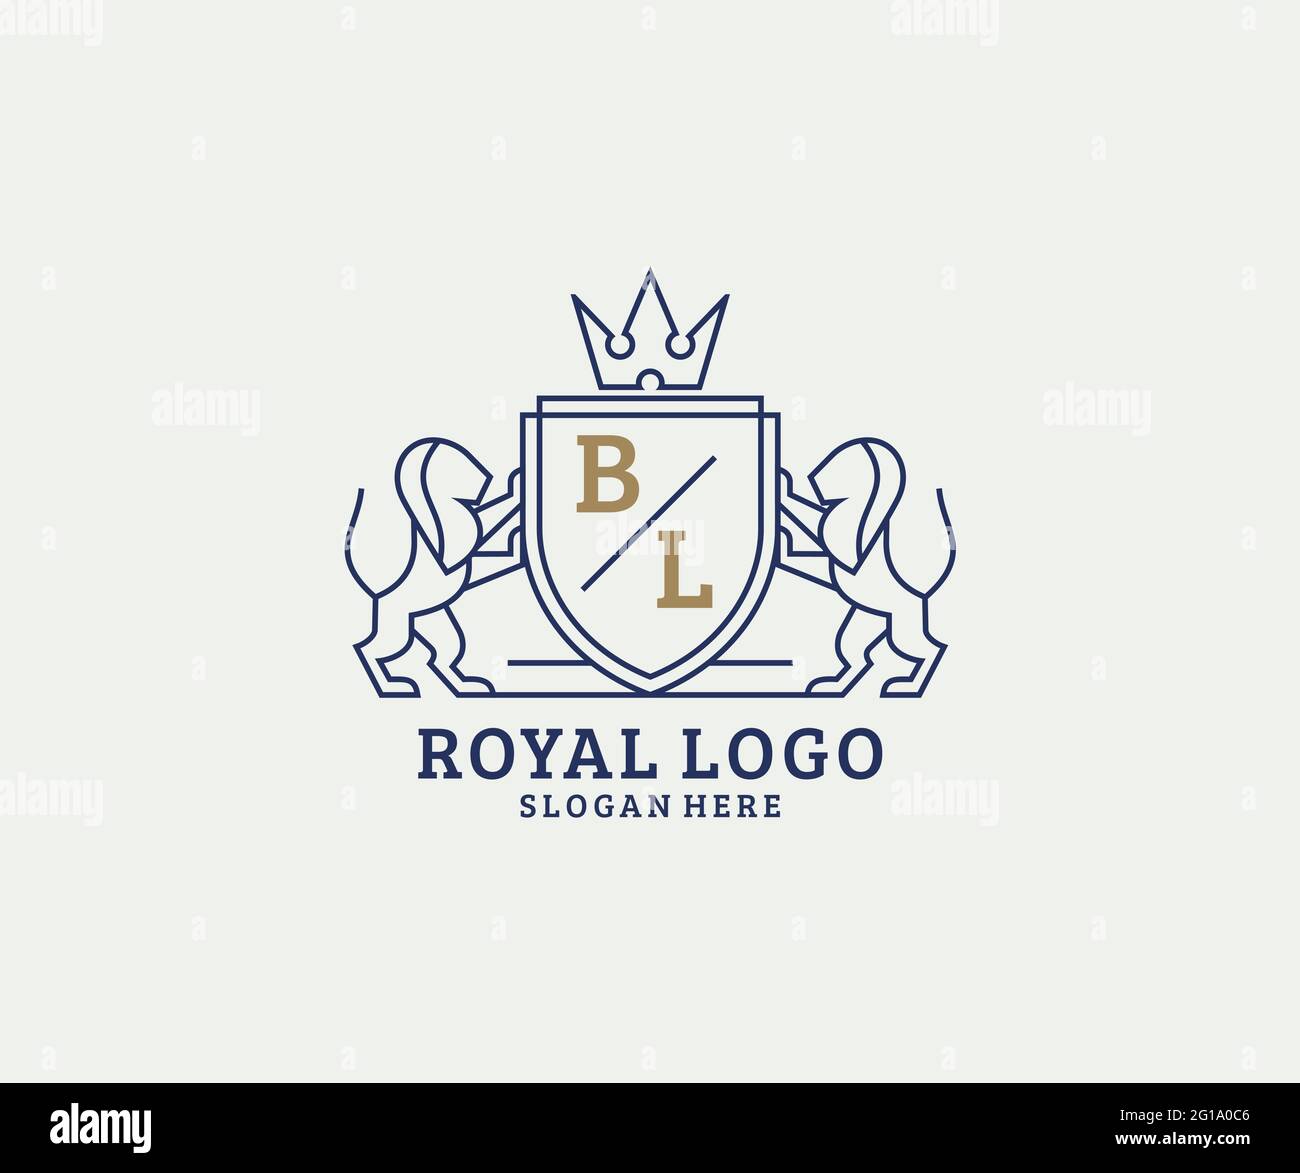 BL Letter Lion Royal Luxury Logo Vorlage in Vektorgrafik für Restaurant, Royalty, Boutique, Cafe, Hotel, Wappentisch, Schmuck, Mode und andere Vektor il Stock Vektor